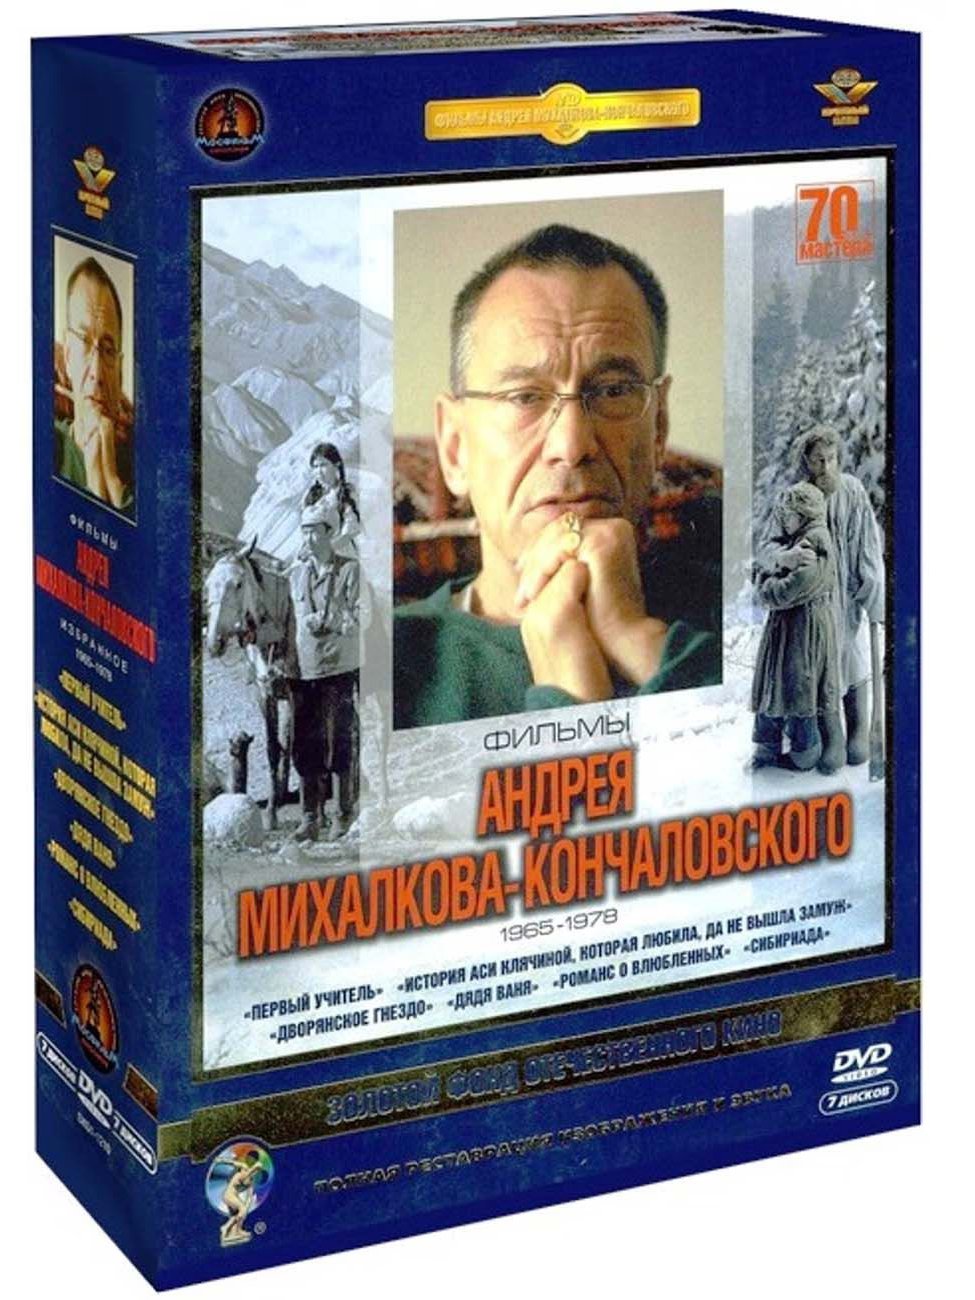 Фильмы Андрея Михалкова-Кончаловского. Избранное 1965-1979 гг. (7 DVD)